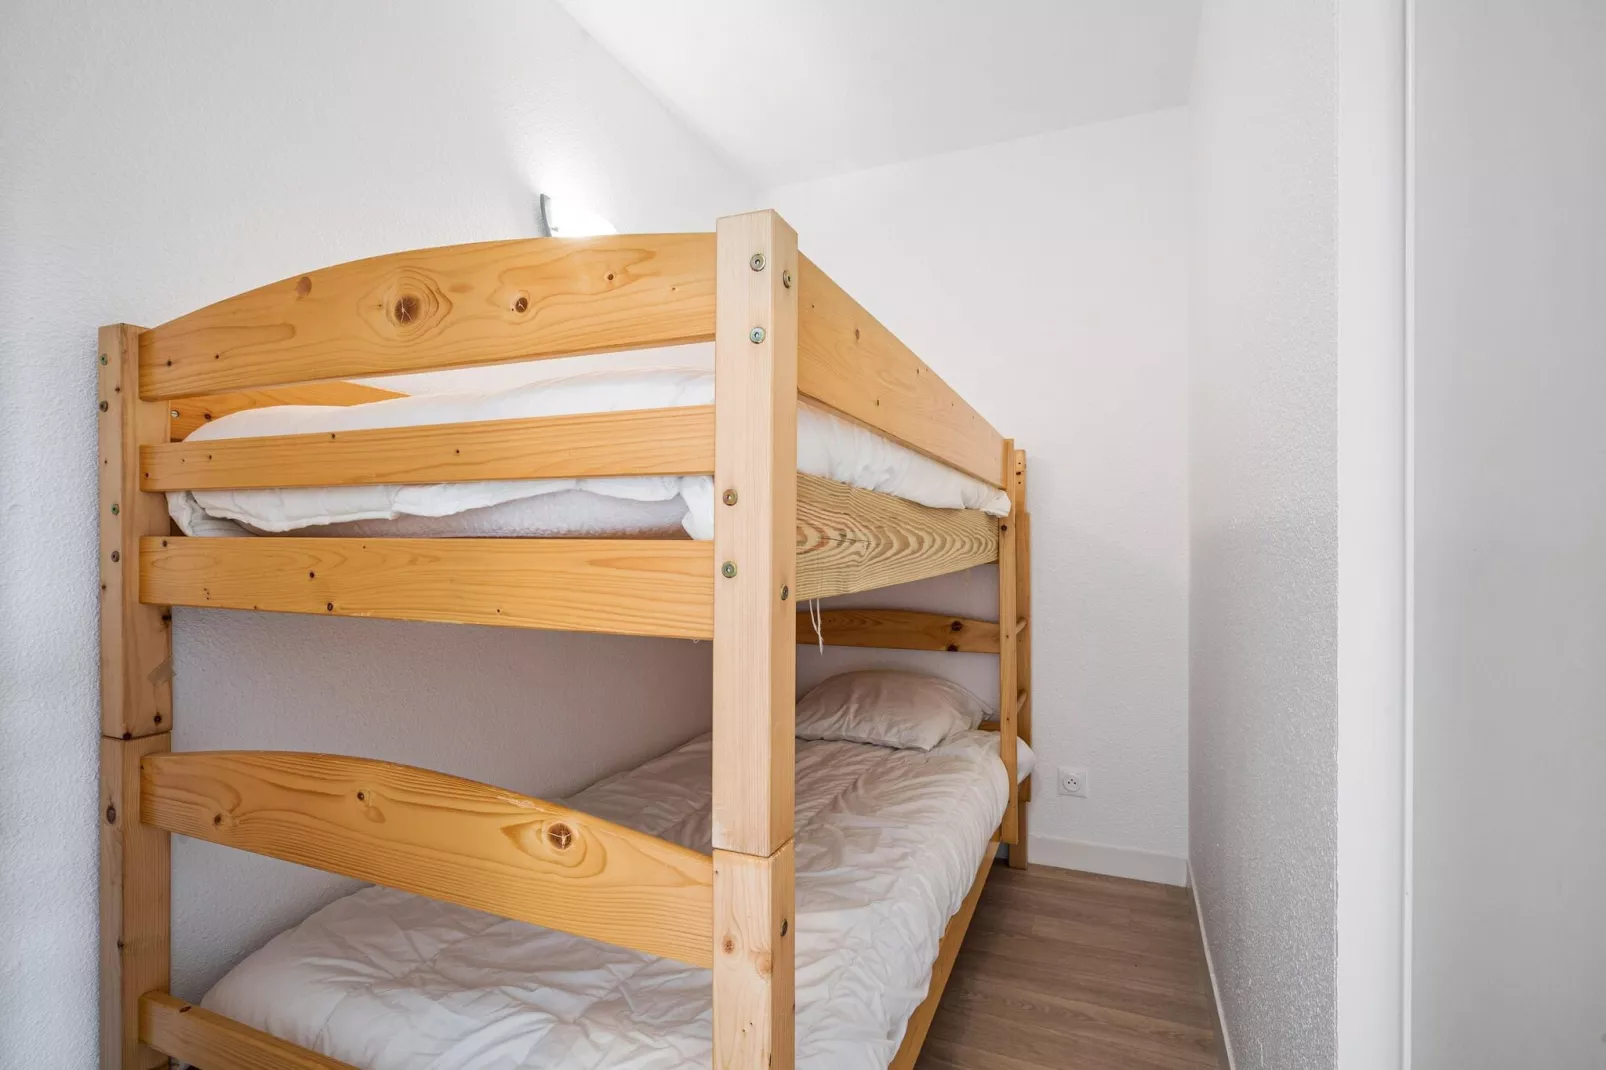 Residence La Voile d'Or L'Ile-aux-Moines  -  OVO26 -App Standard 6 p - Terr ou balcon - Apt 5 pers - 1 chambre-Slaapkamer